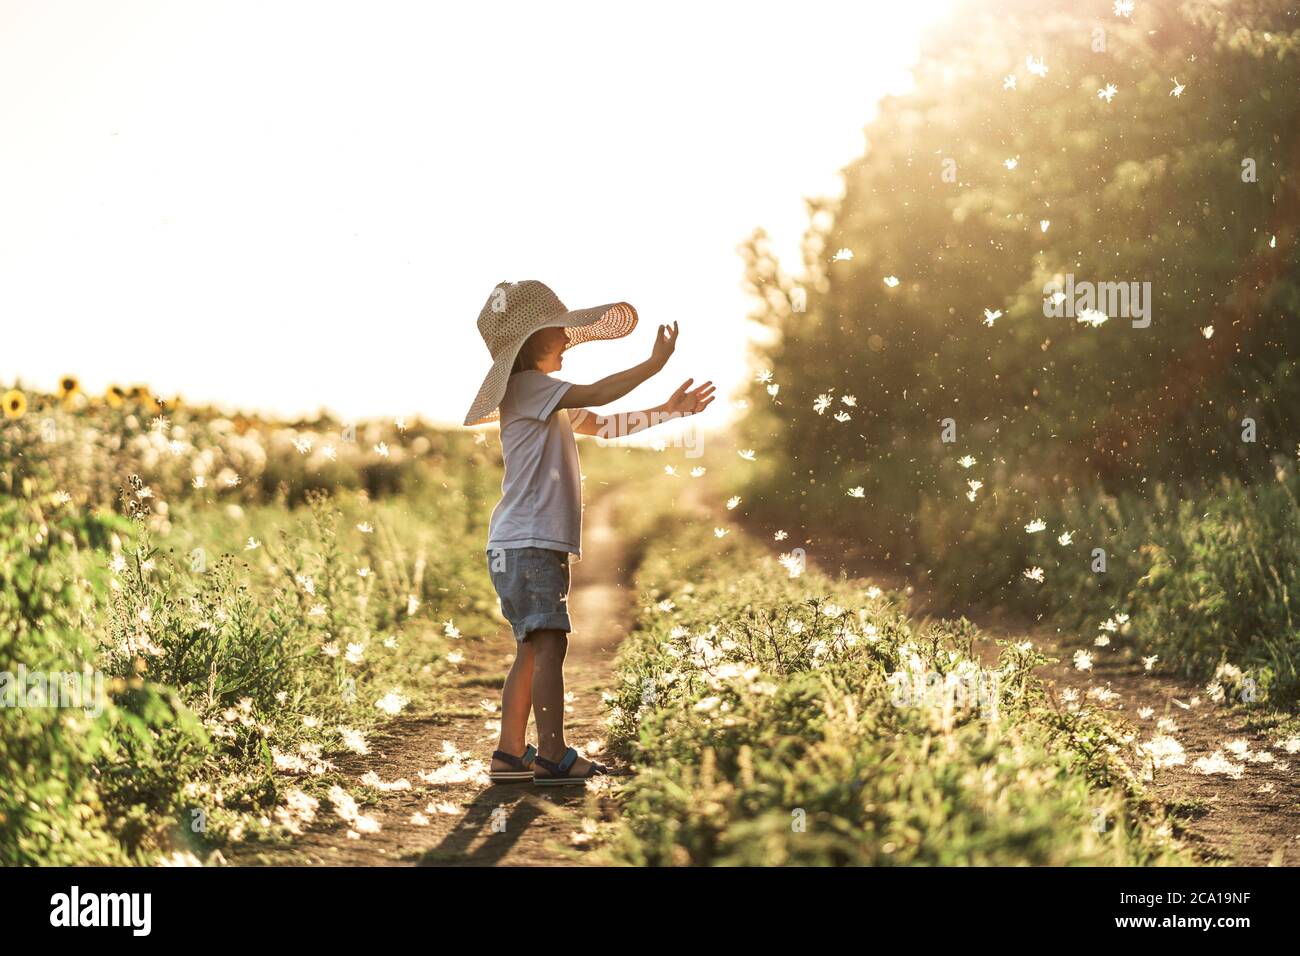 Un petit garçon joue avec des fluffs au coucher du soleil, en profitant de la vie et de la nature. Joyeux enfant à la campagne. Silhouette d'un garçon dans les rayons du soleil. Air frais, environnement concept. Banque D'Images